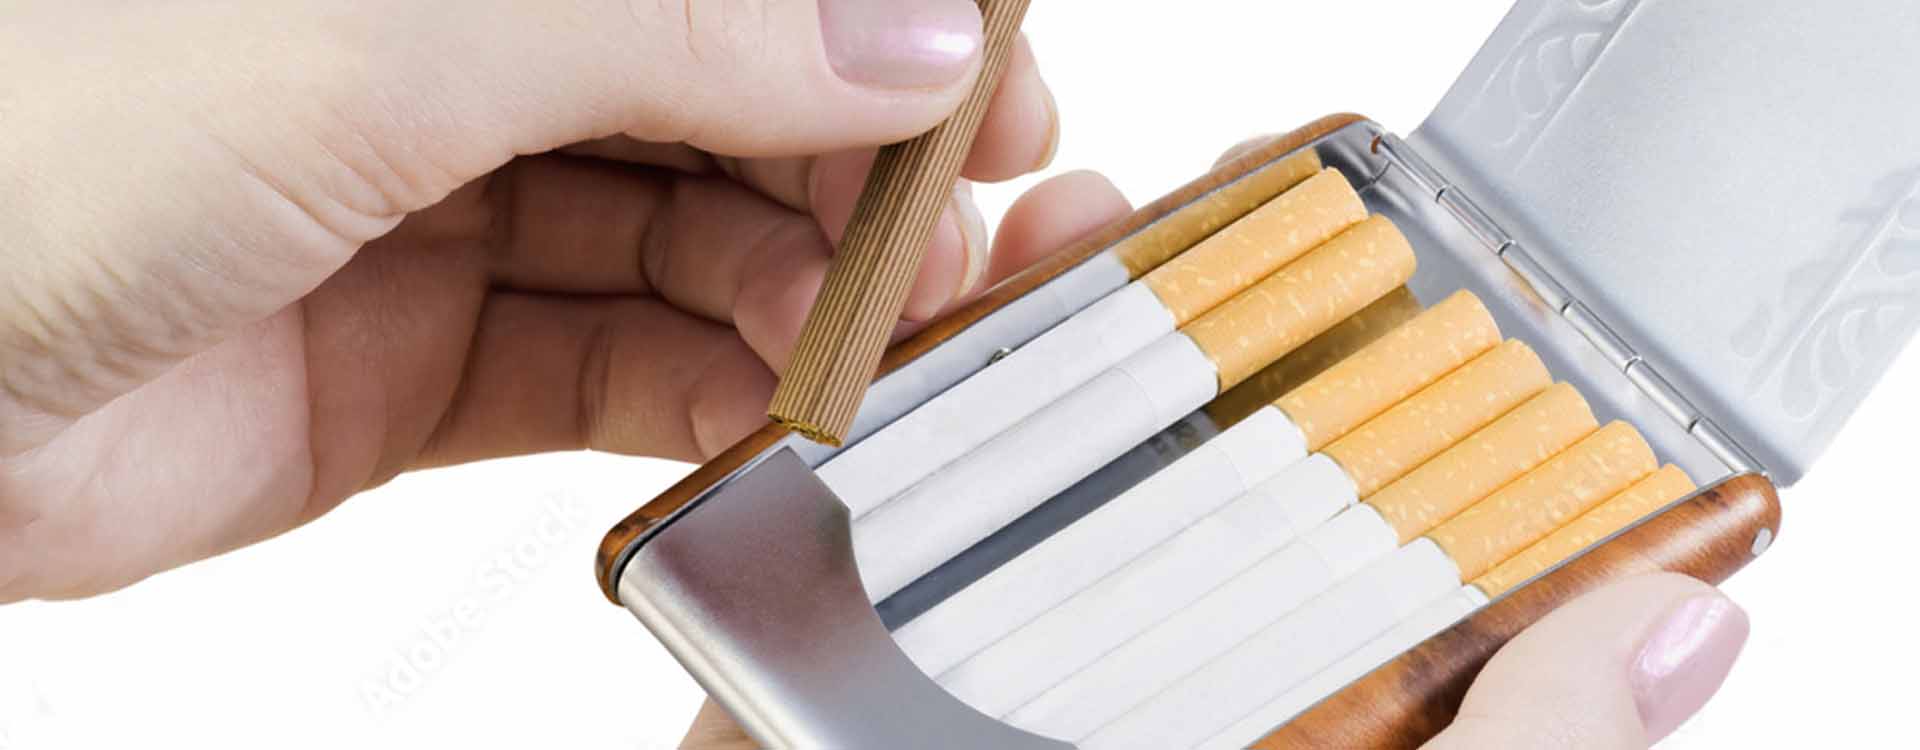 Tabatierka na cigarety - detail tabatierky plnej cigariet a ženskej ruky držiacejj cigaretu